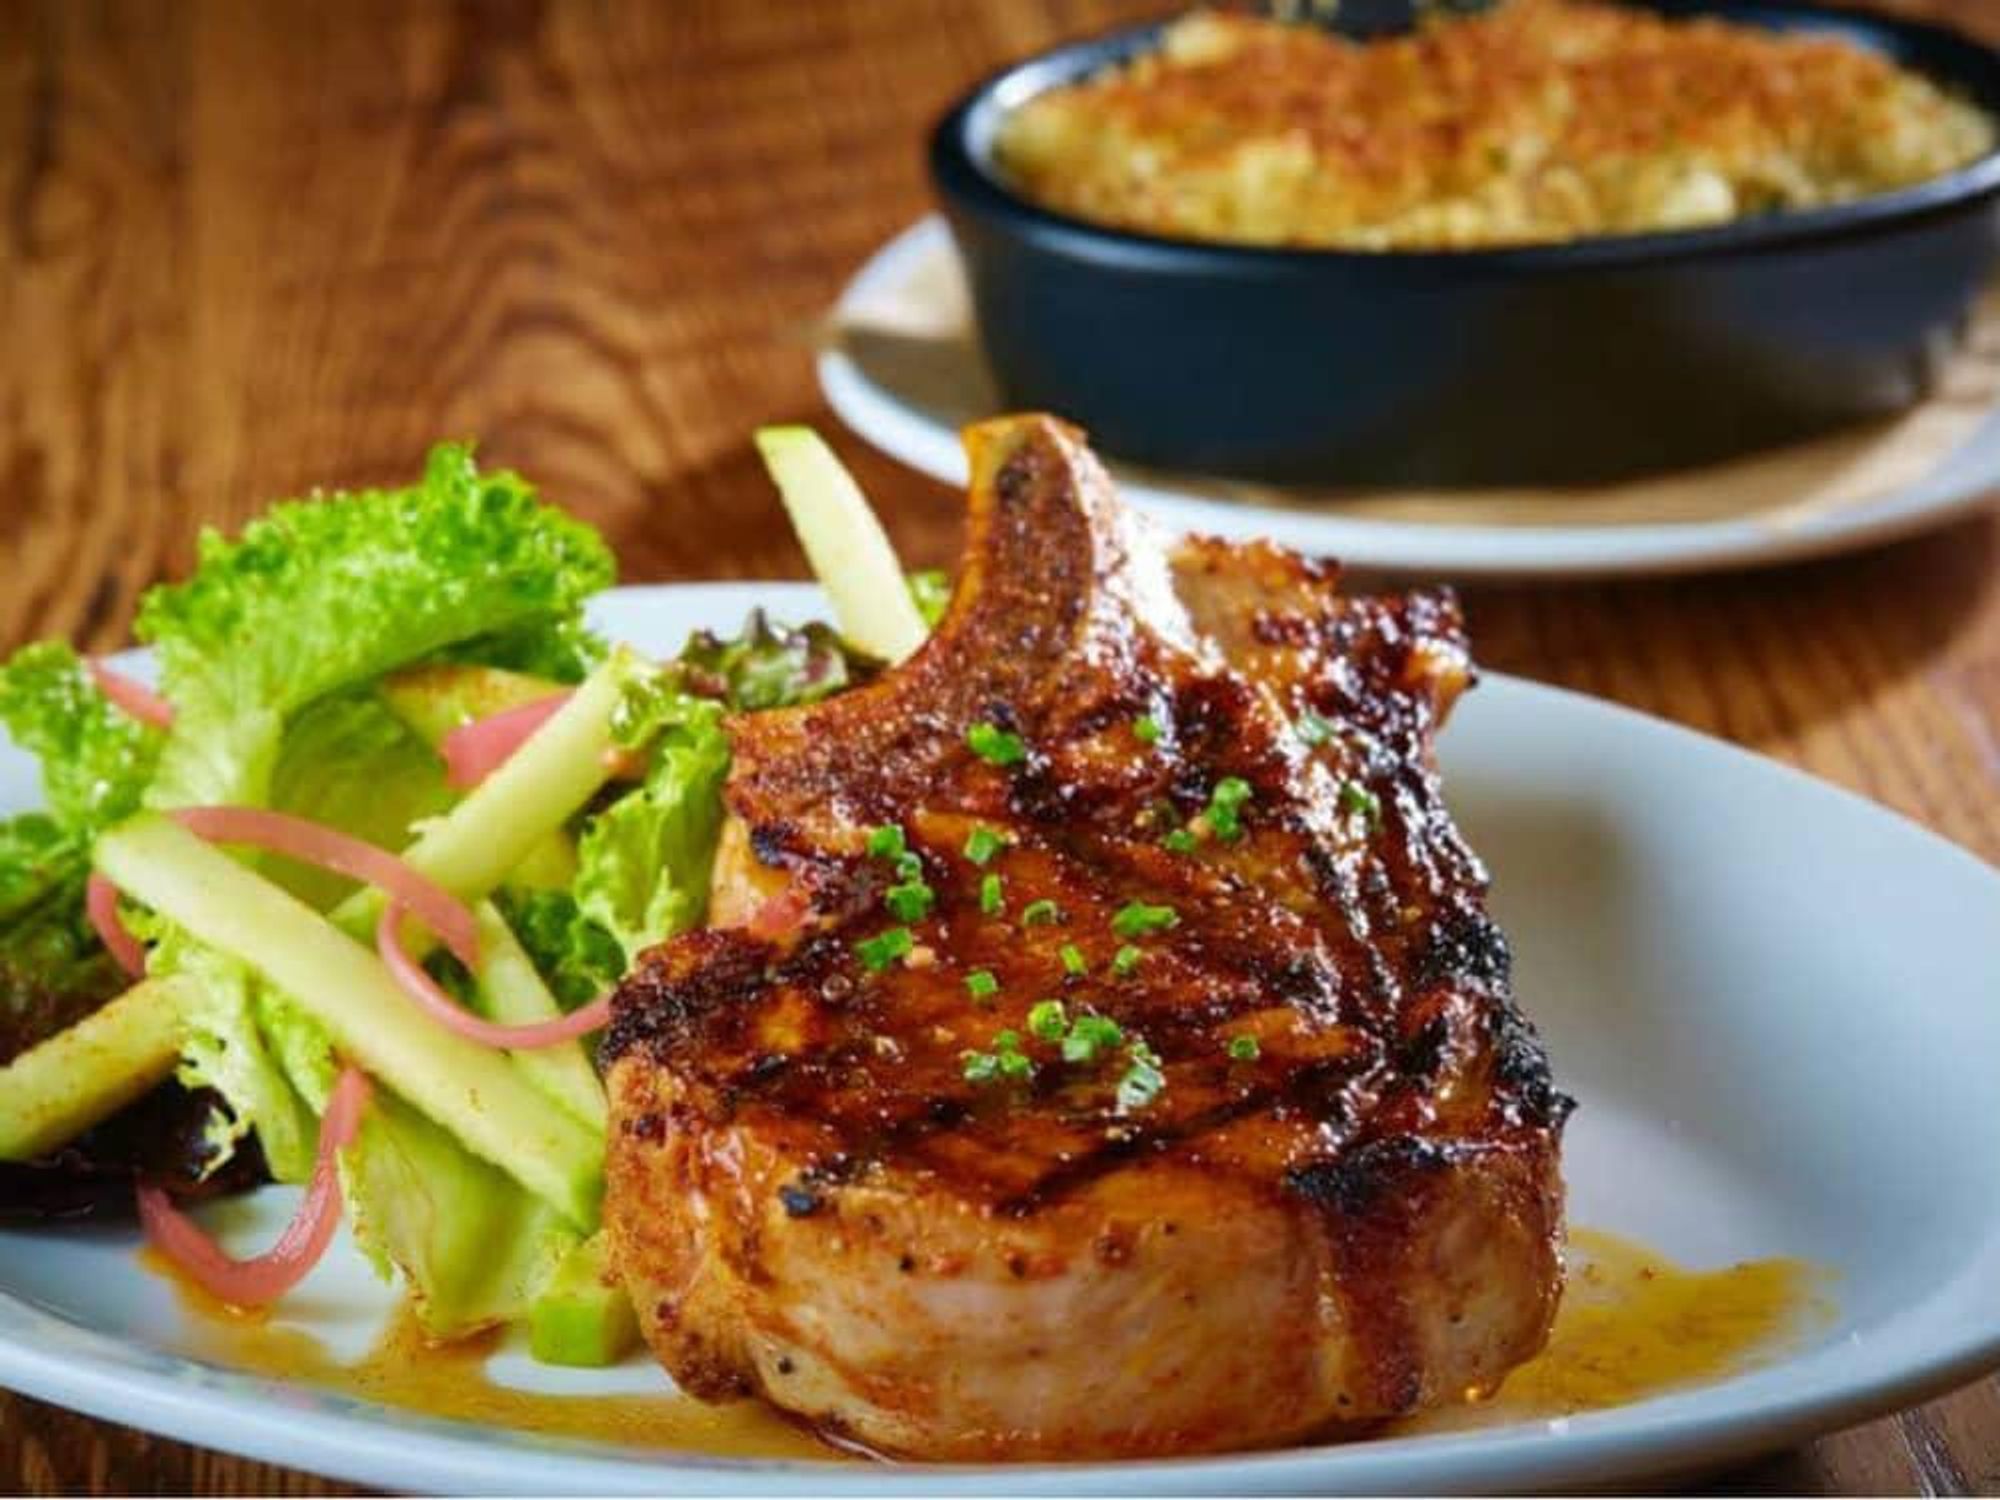 Pork chop at Sugarbacon restaurant in Dallas